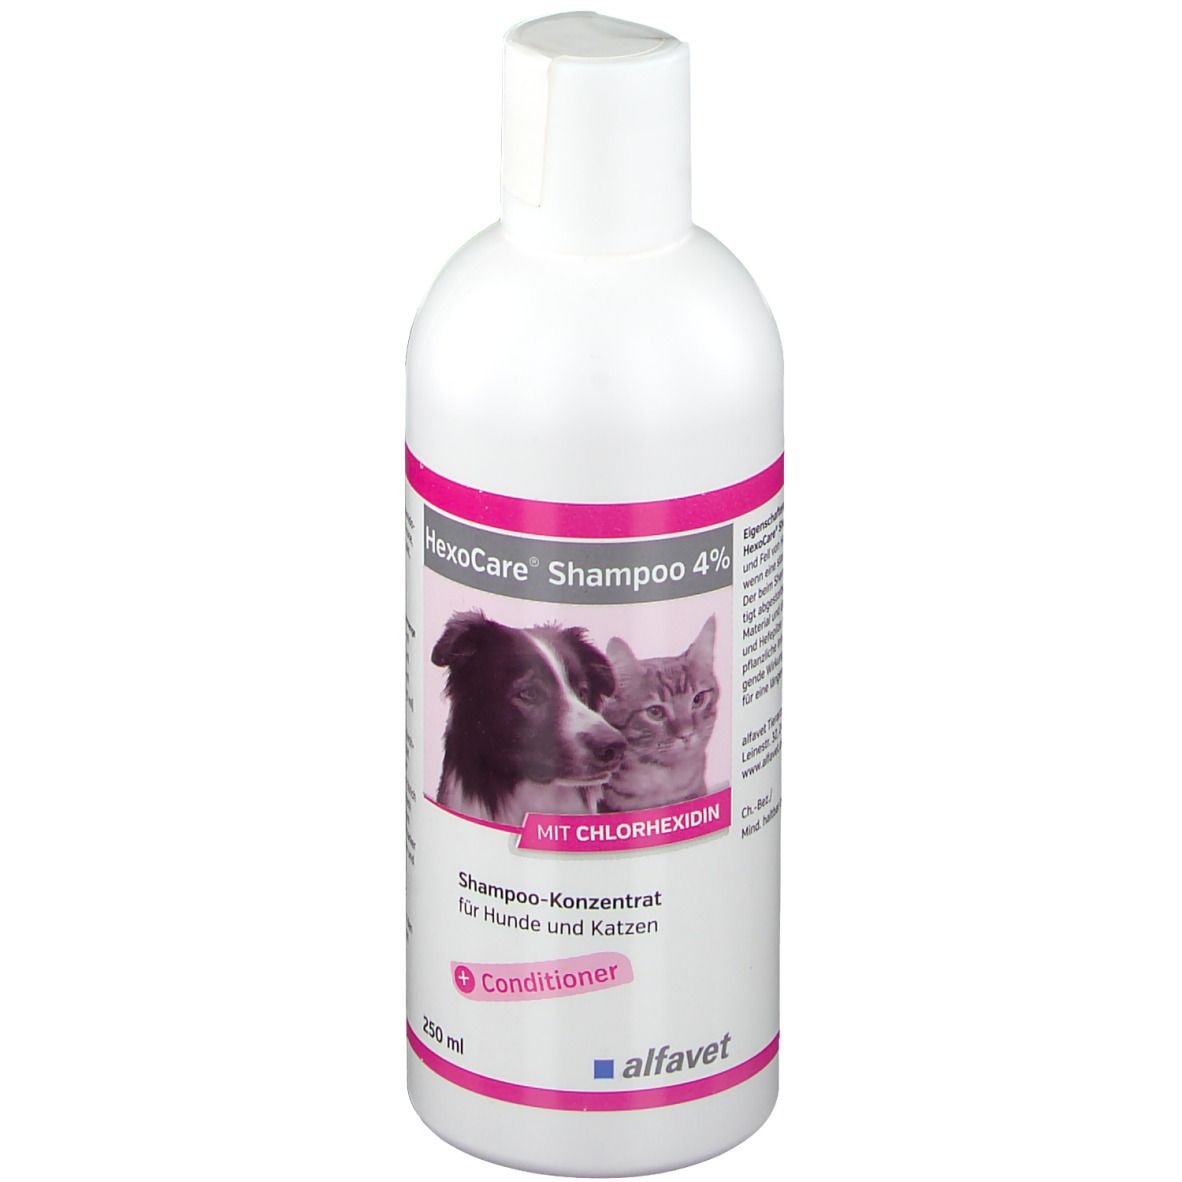 Image of HexoCare® Shampoo 4% für Hunde und Katzen